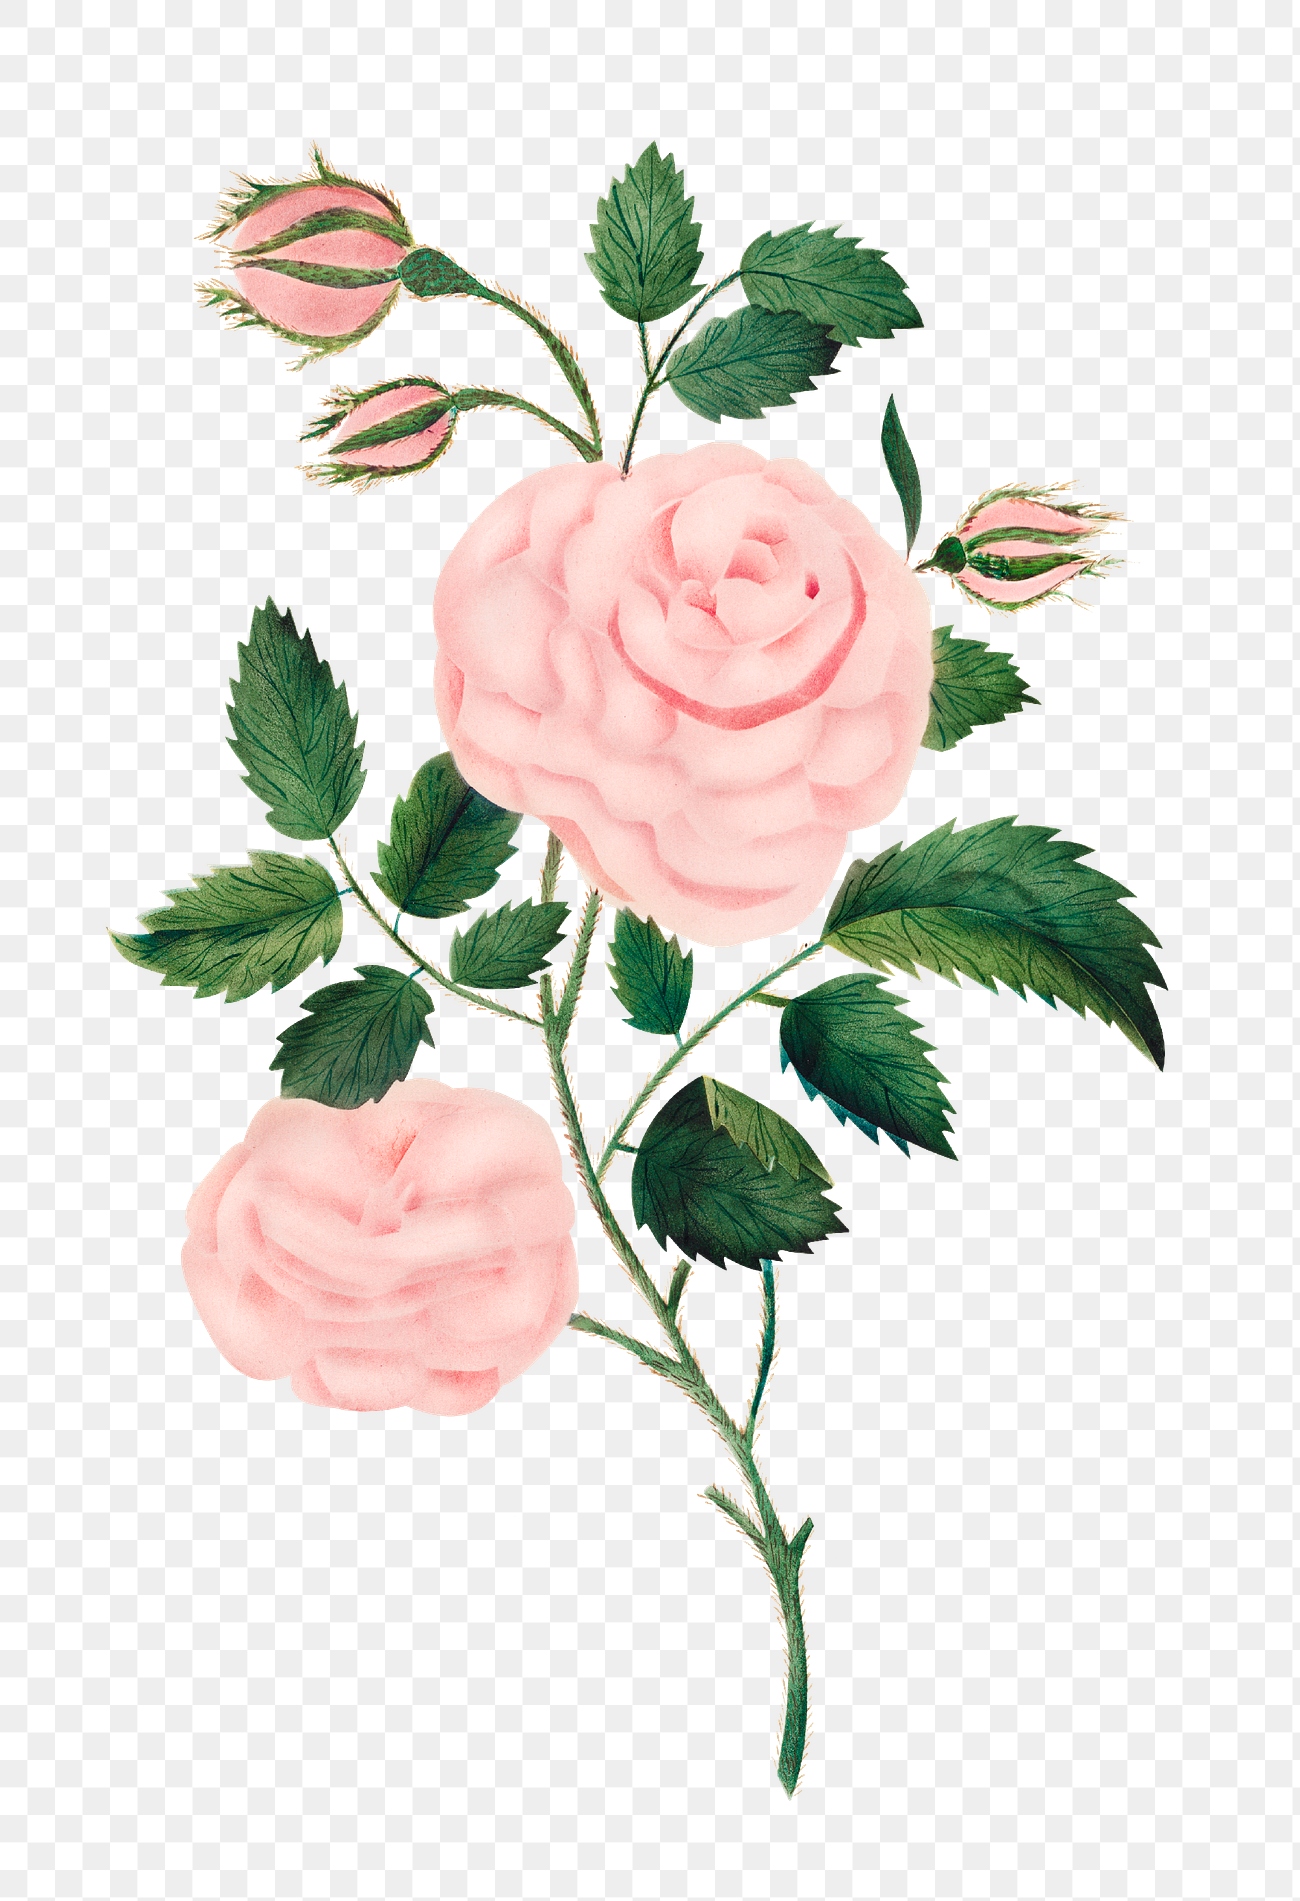 Damask rose vintage illustration transparent | Free PNG Sticker - rawpixel